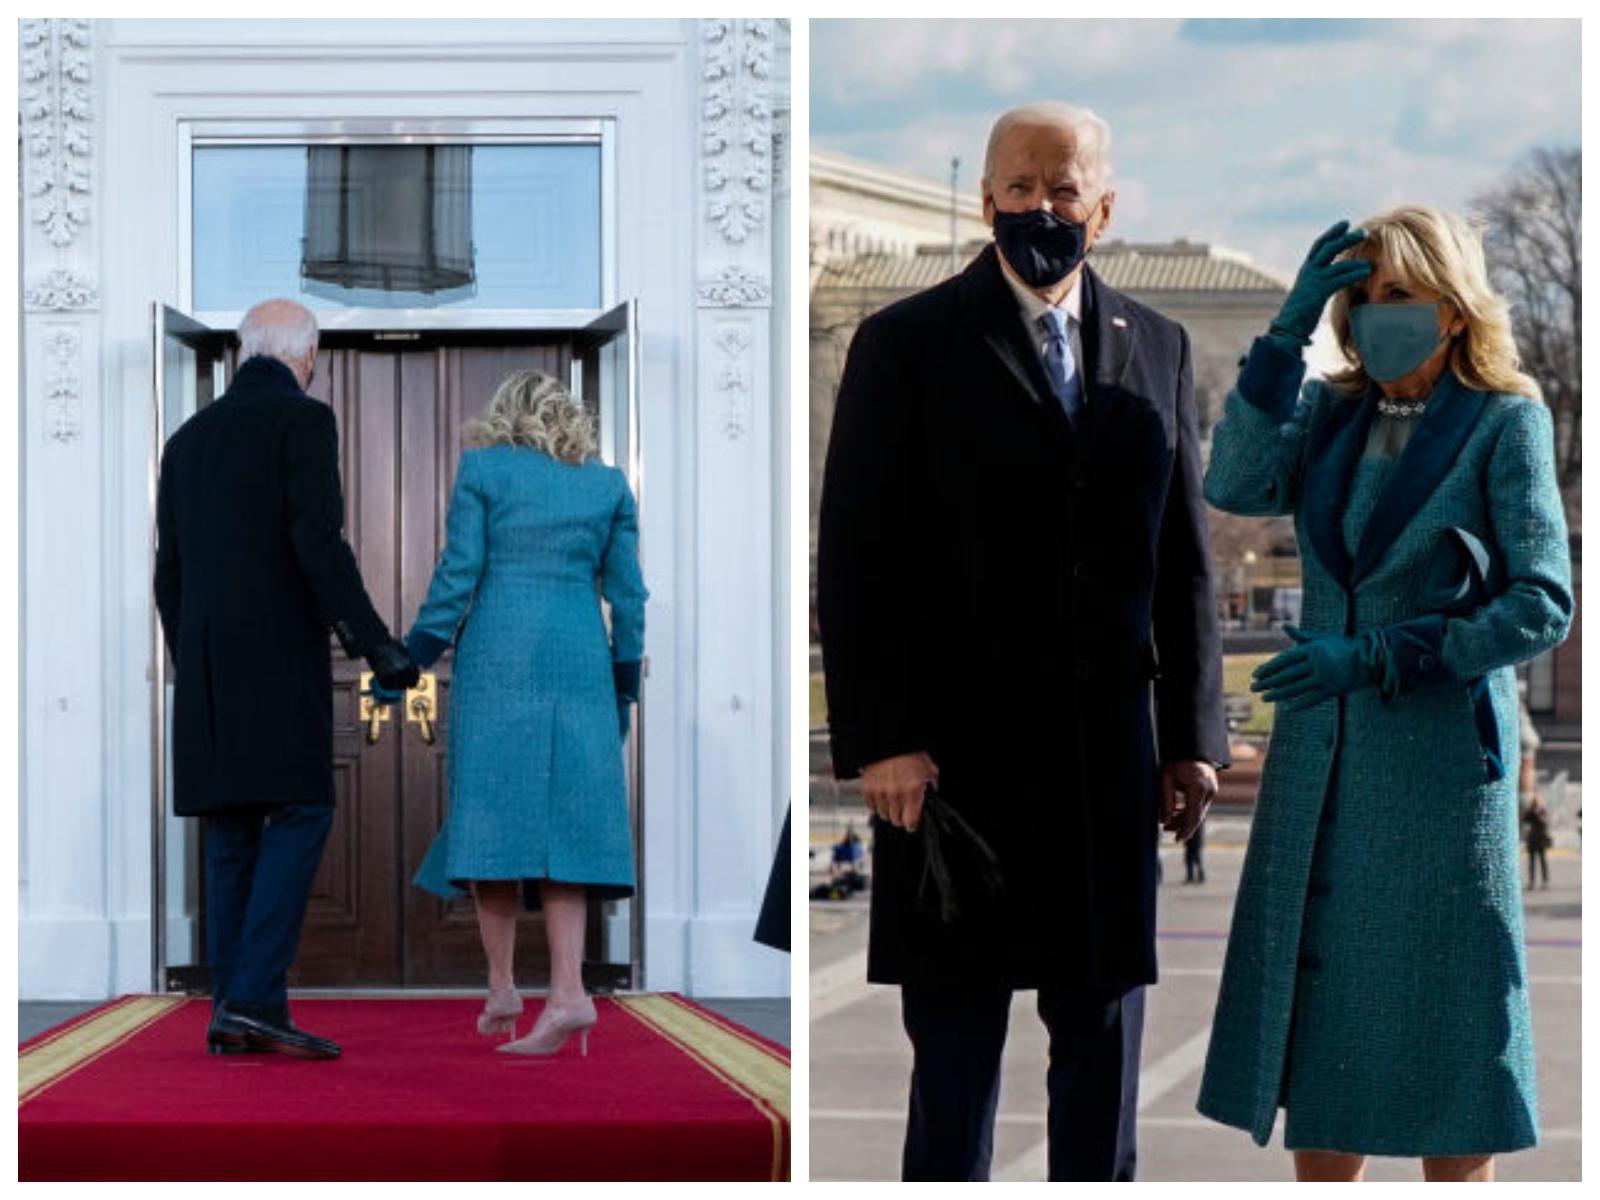 Moment stânjenitor pentru soții Biden: „Ne deschide și nouă ușa cineva?” Ce s-a întâmplat când au ajuns la Casa Albă